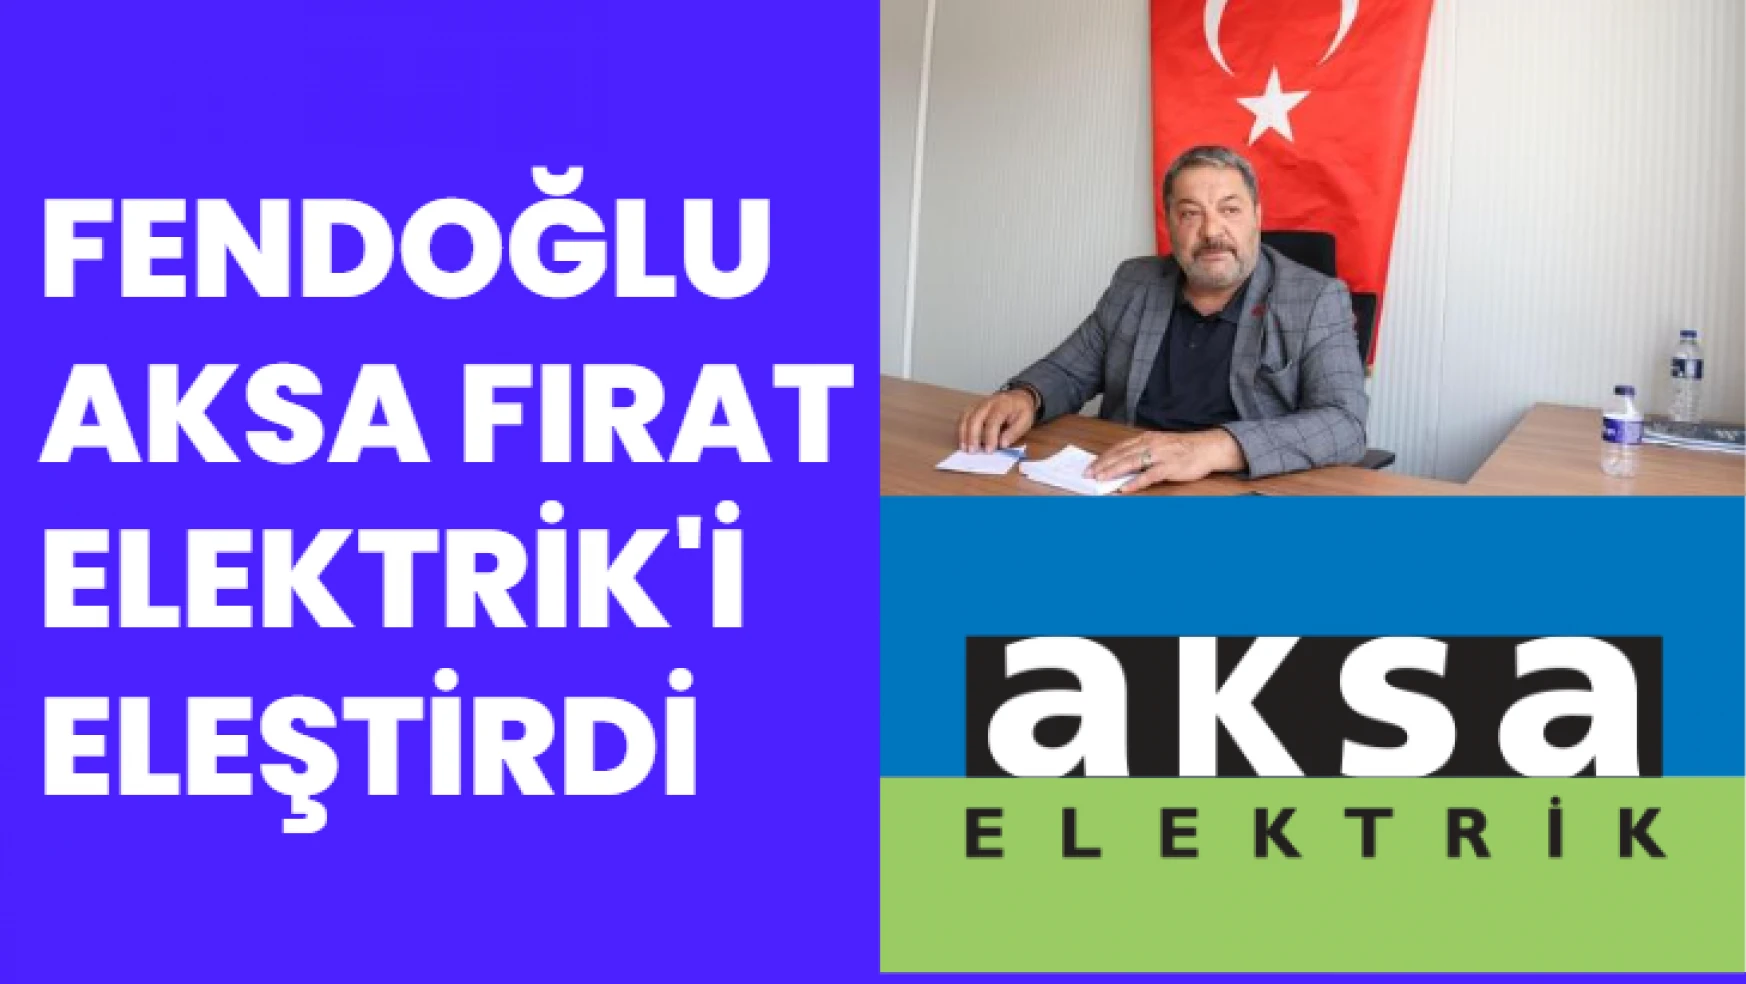 Fendoğlu Aksa Fırat Elektrik'i eleştirdi